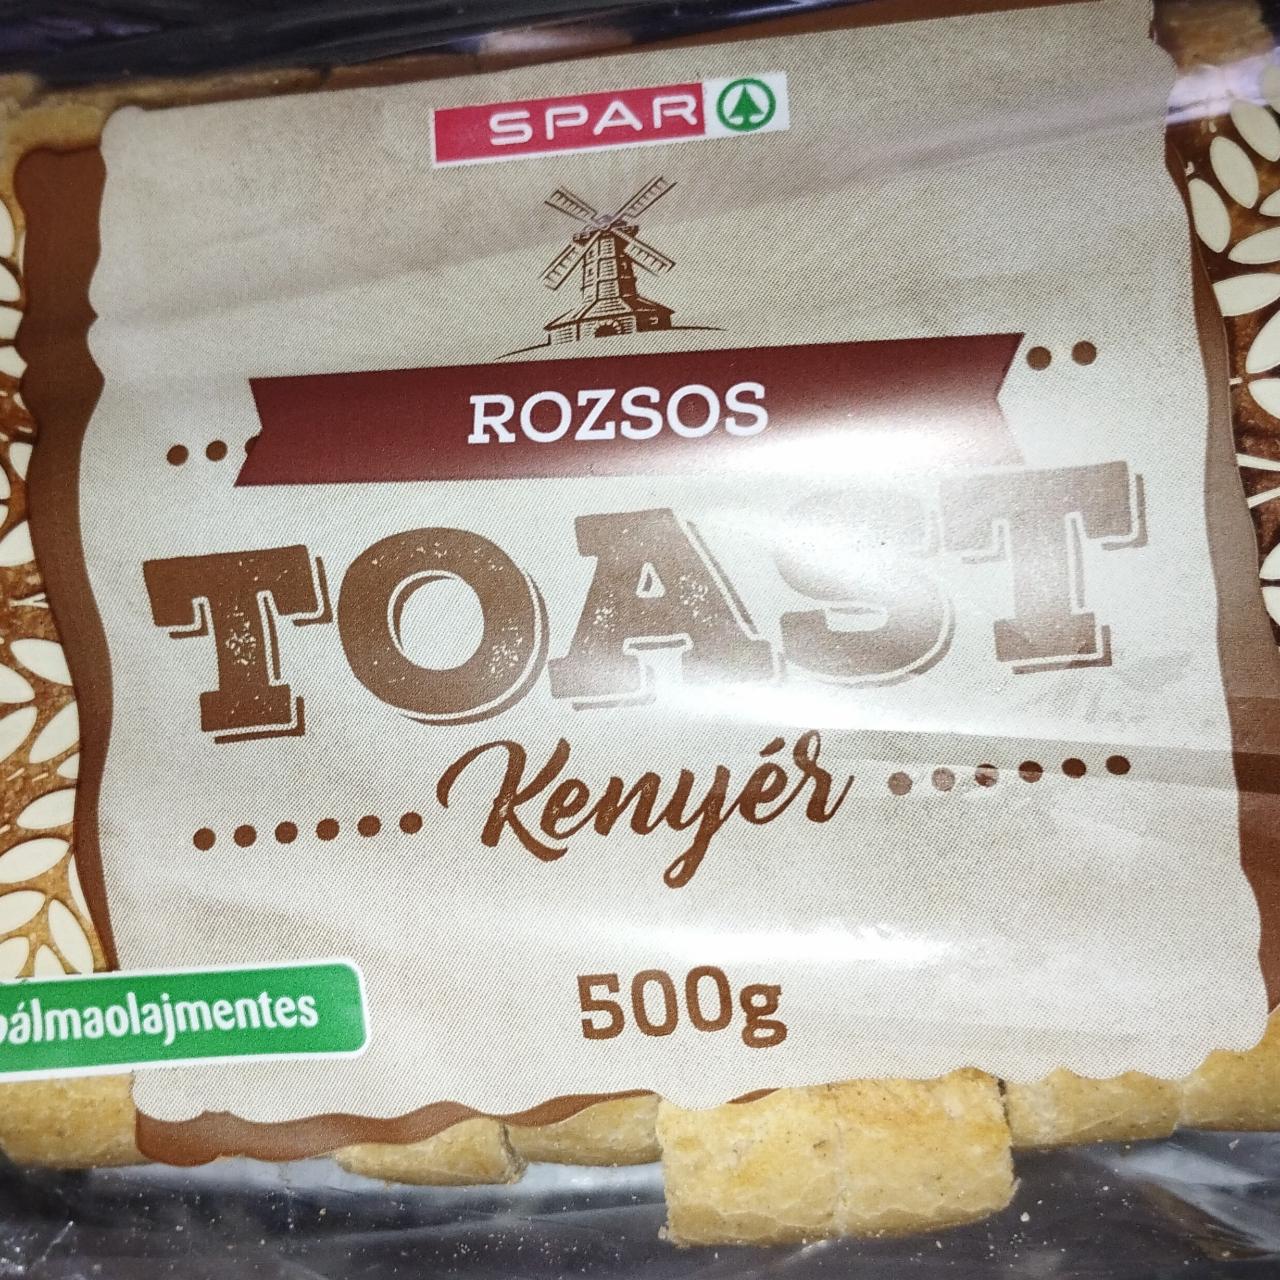 Képek - Rozsos toast kenyér Spar